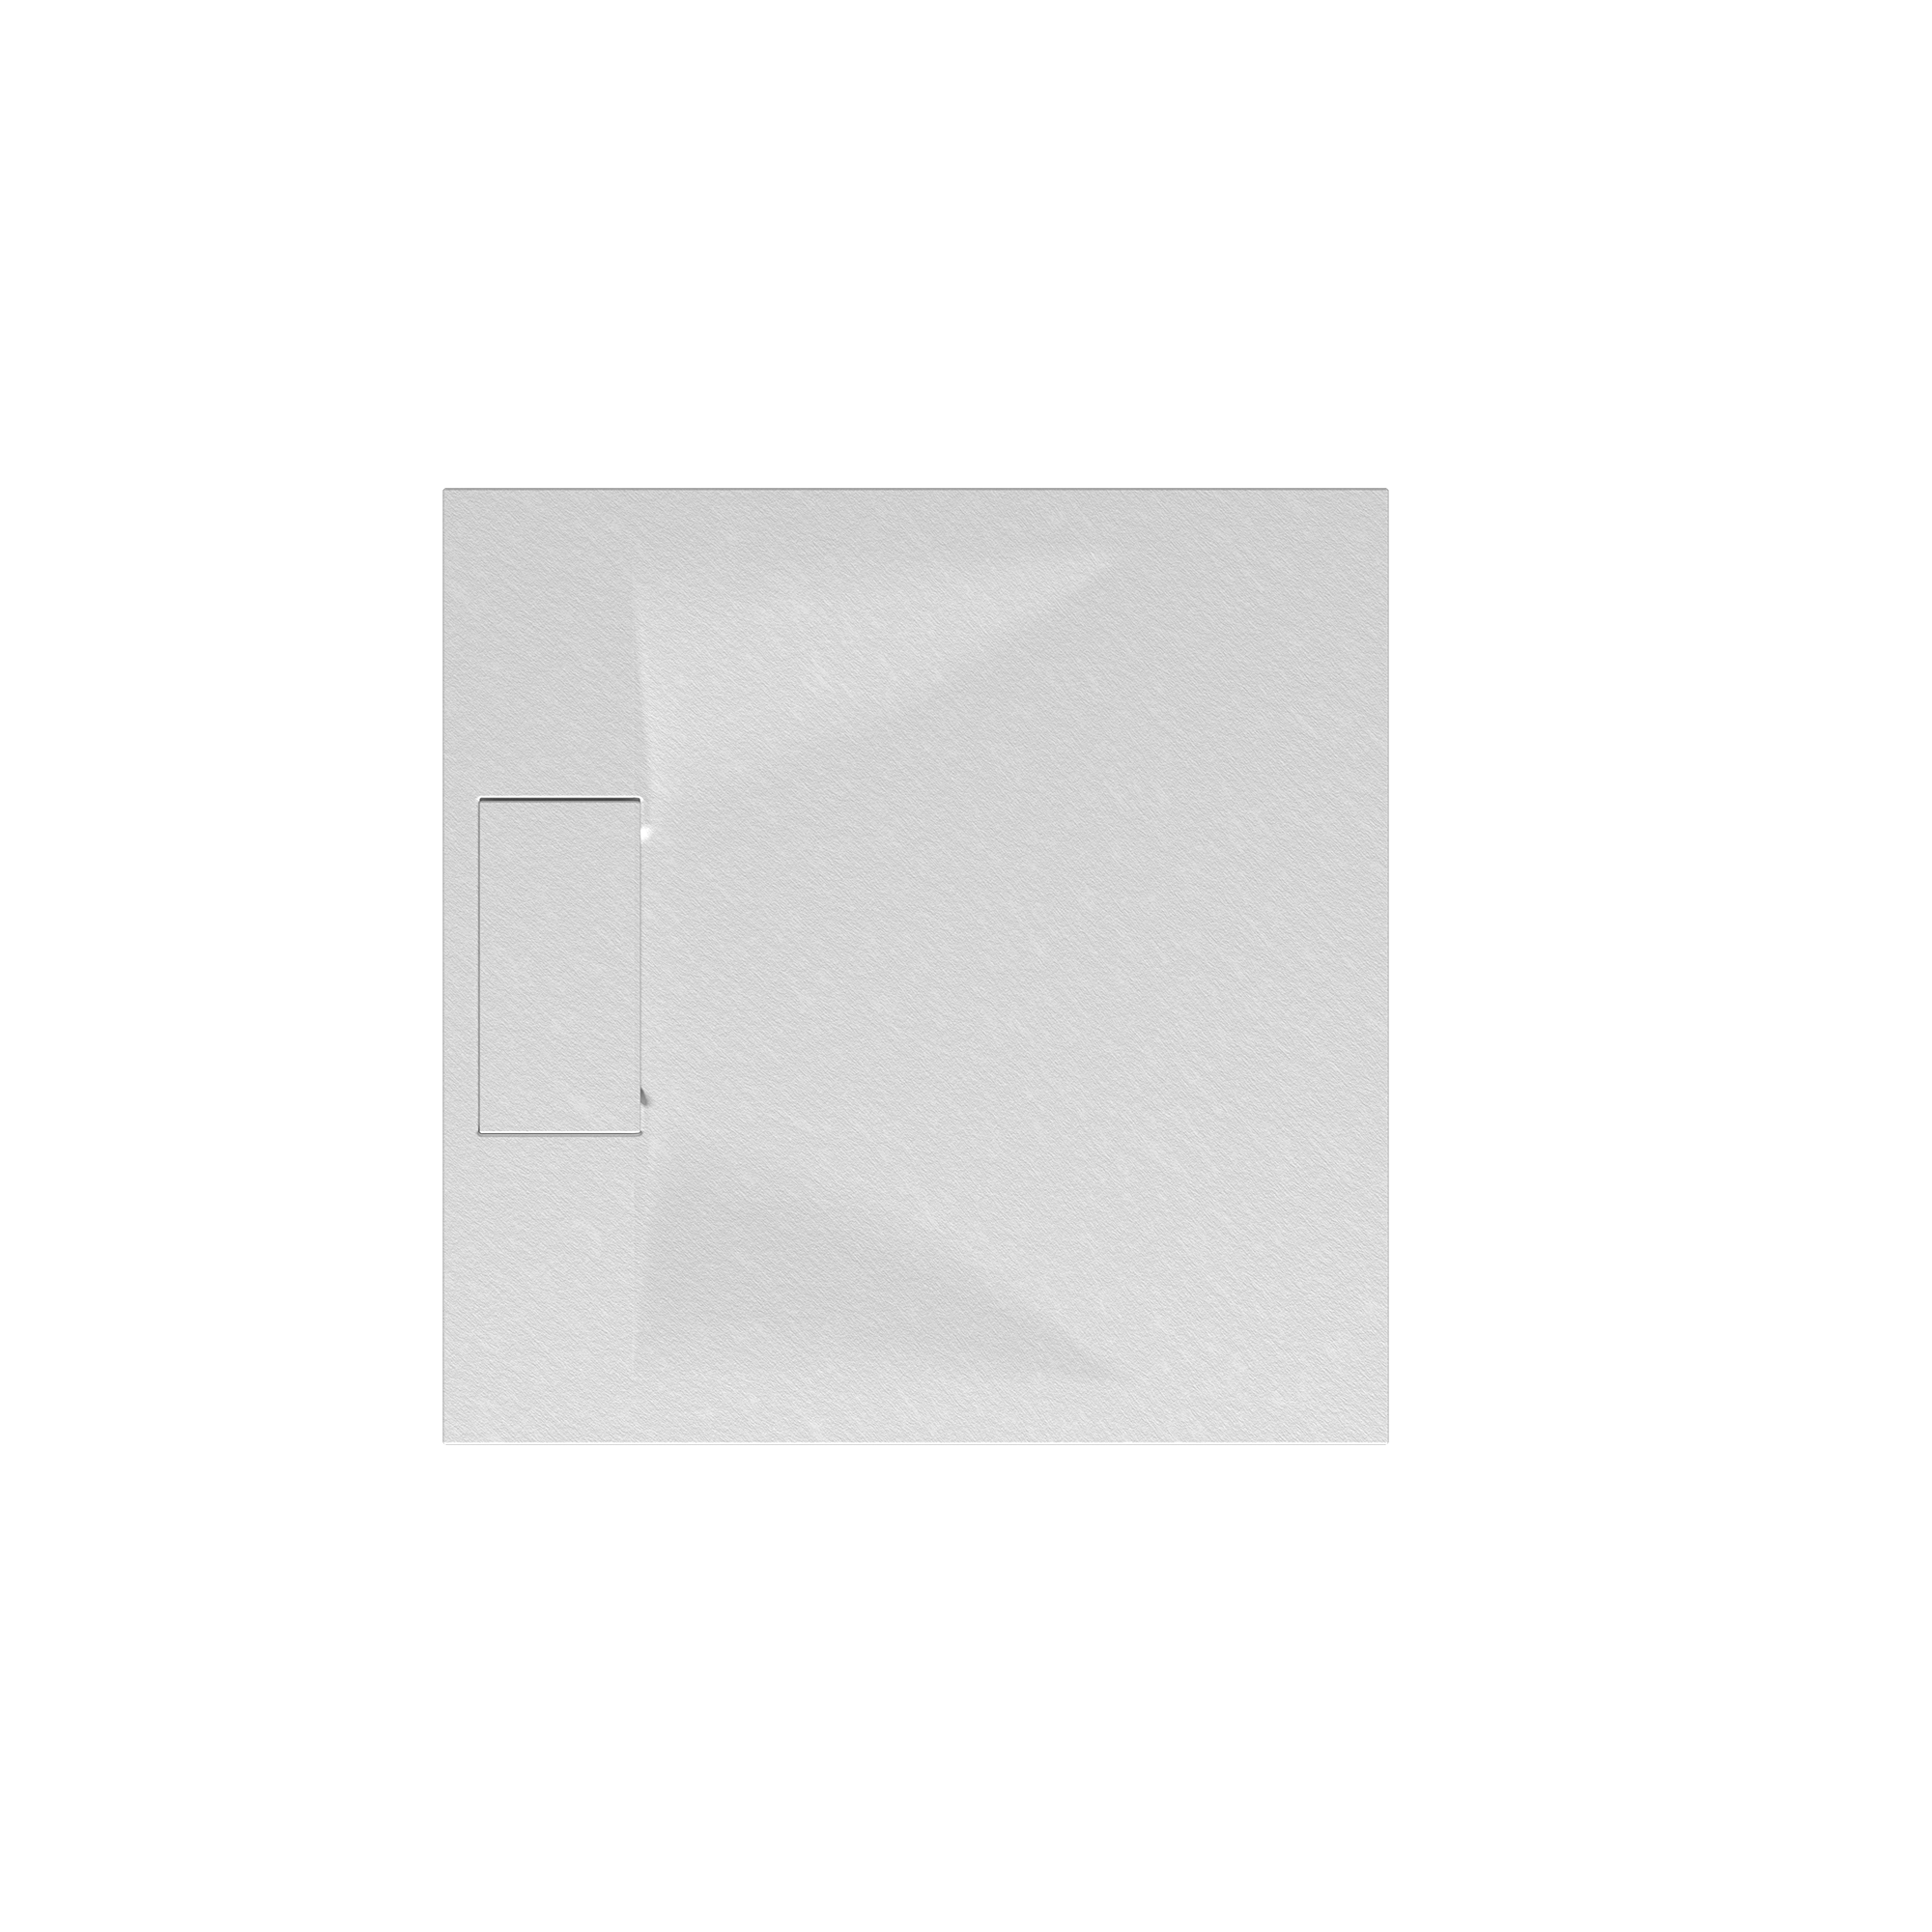 Duschwanne 'Lite Line/Quick72' Steinoptik weiß 80 x 80 cm + product picture